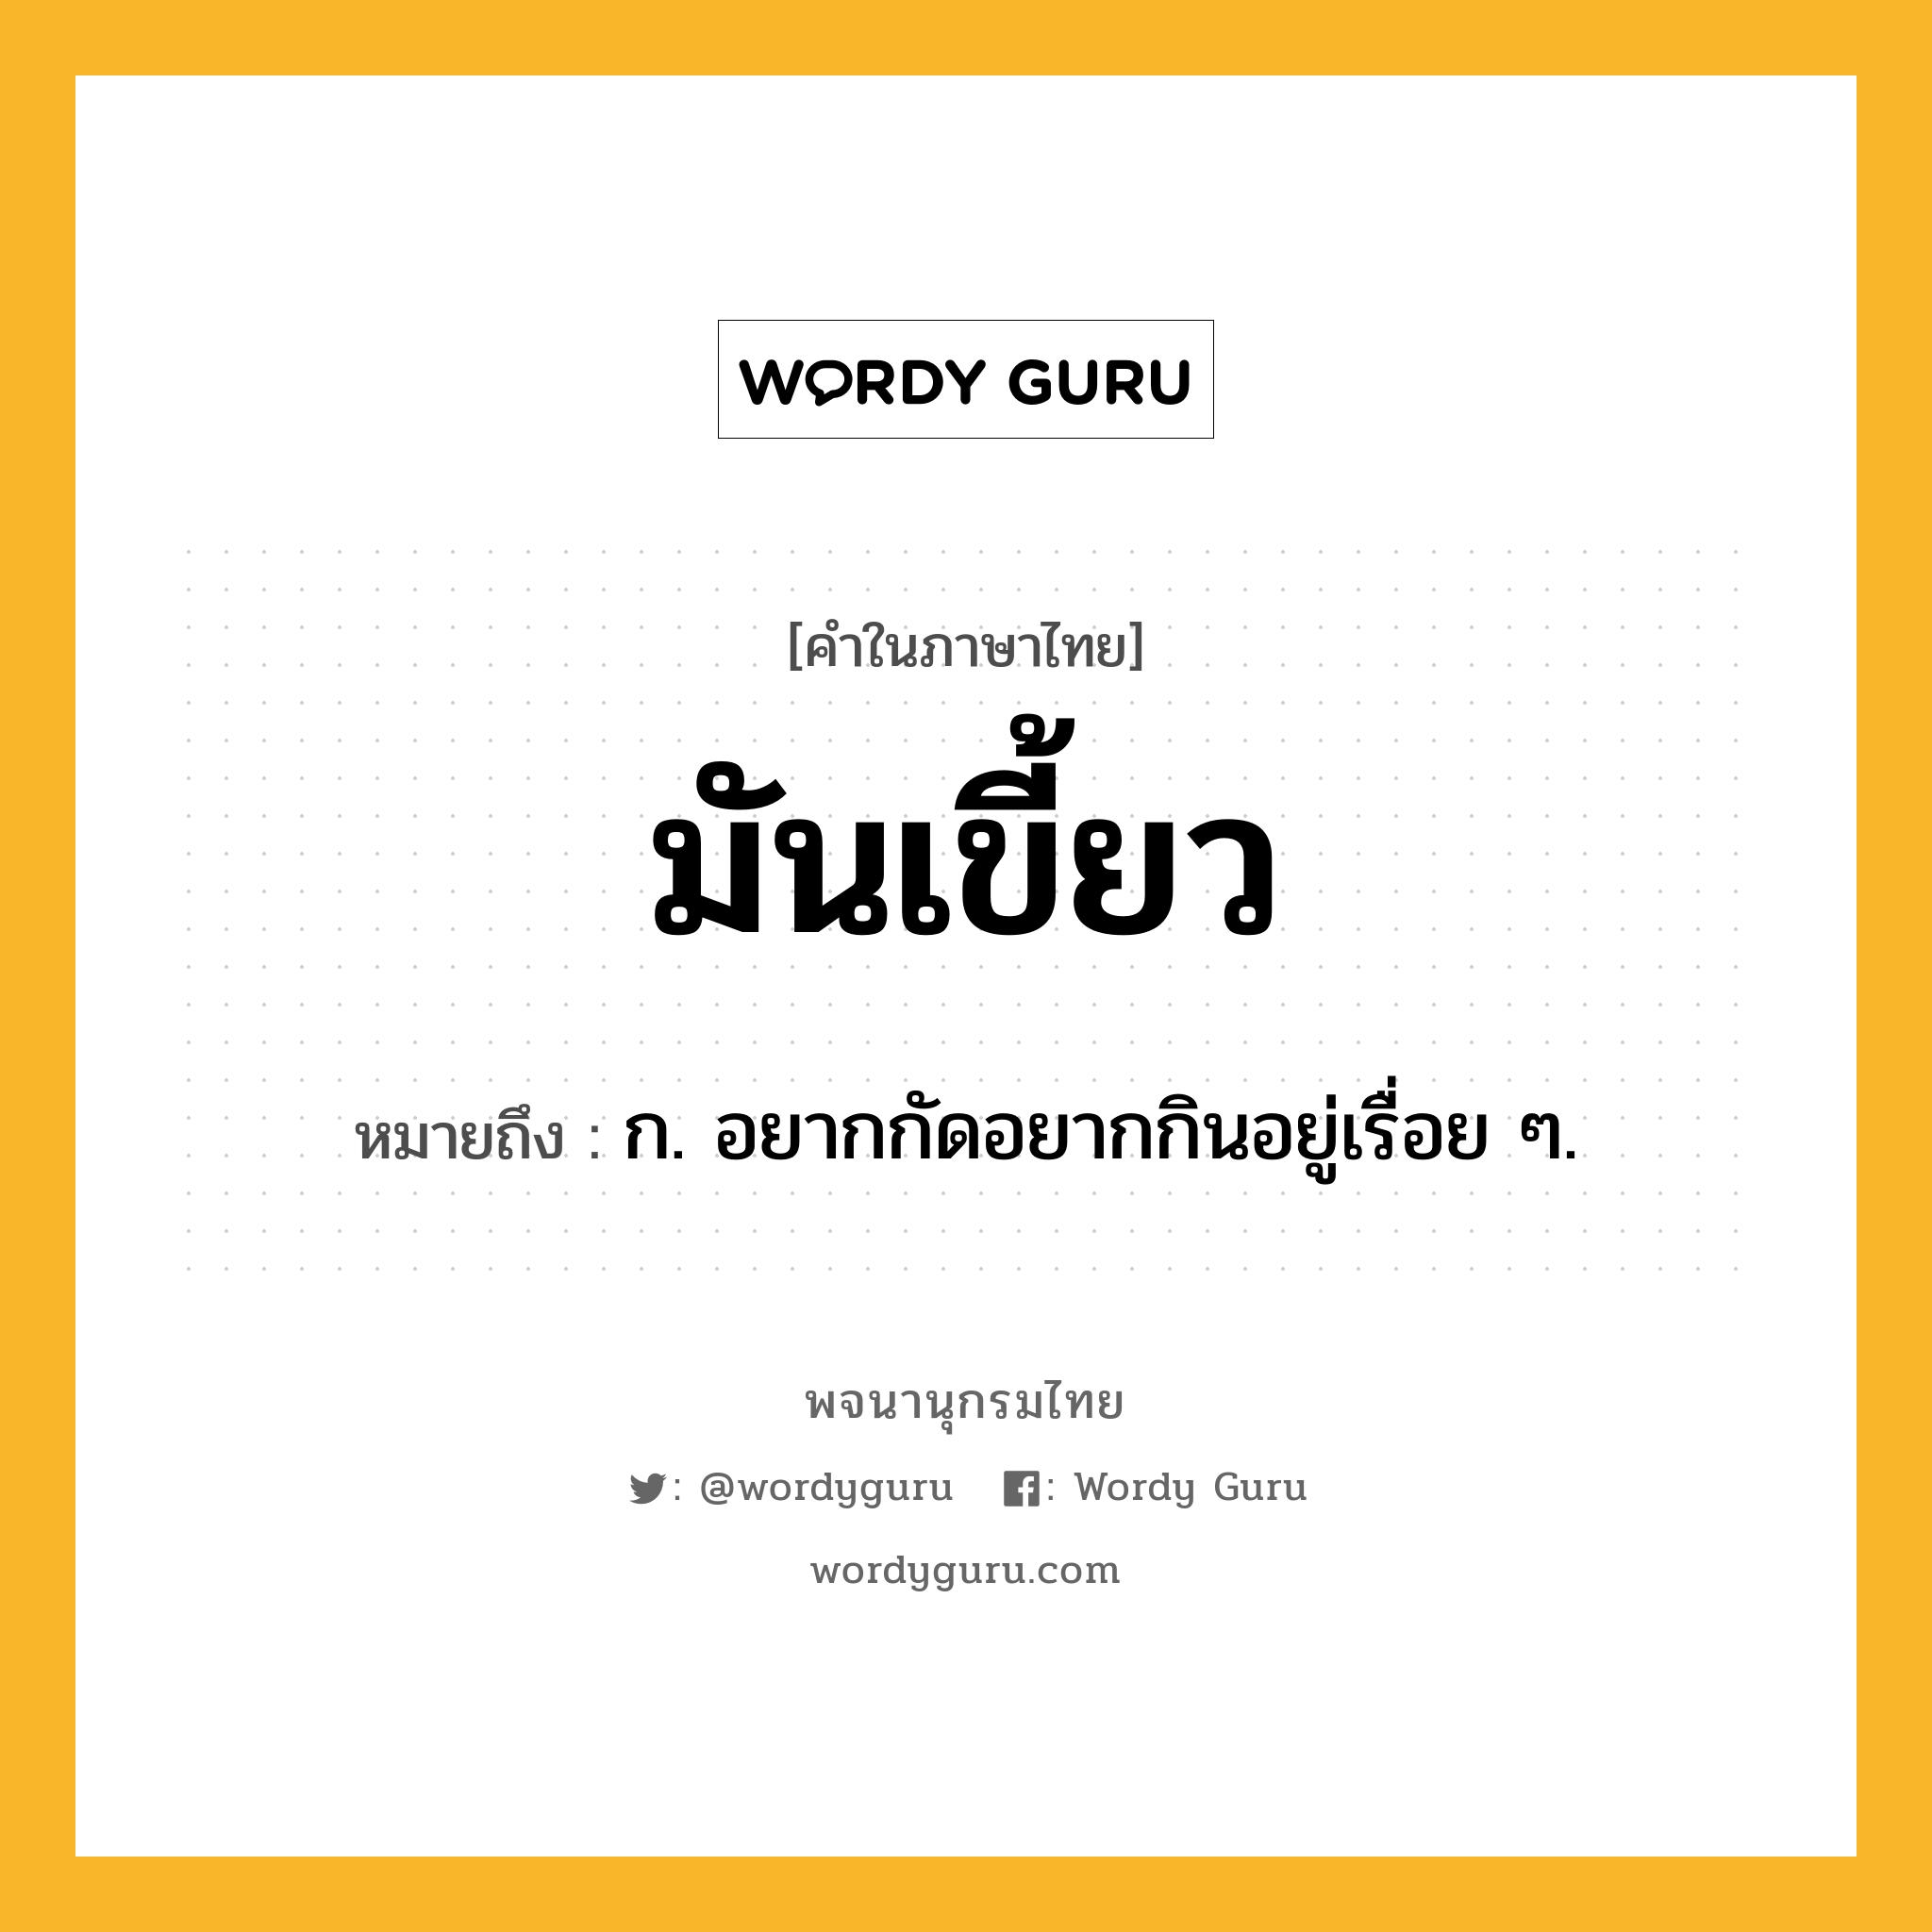 มันเขี้ยว ความหมาย หมายถึงอะไร?, คำในภาษาไทย มันเขี้ยว หมายถึง ก. อยากกัดอยากกินอยู่เรื่อย ๆ.